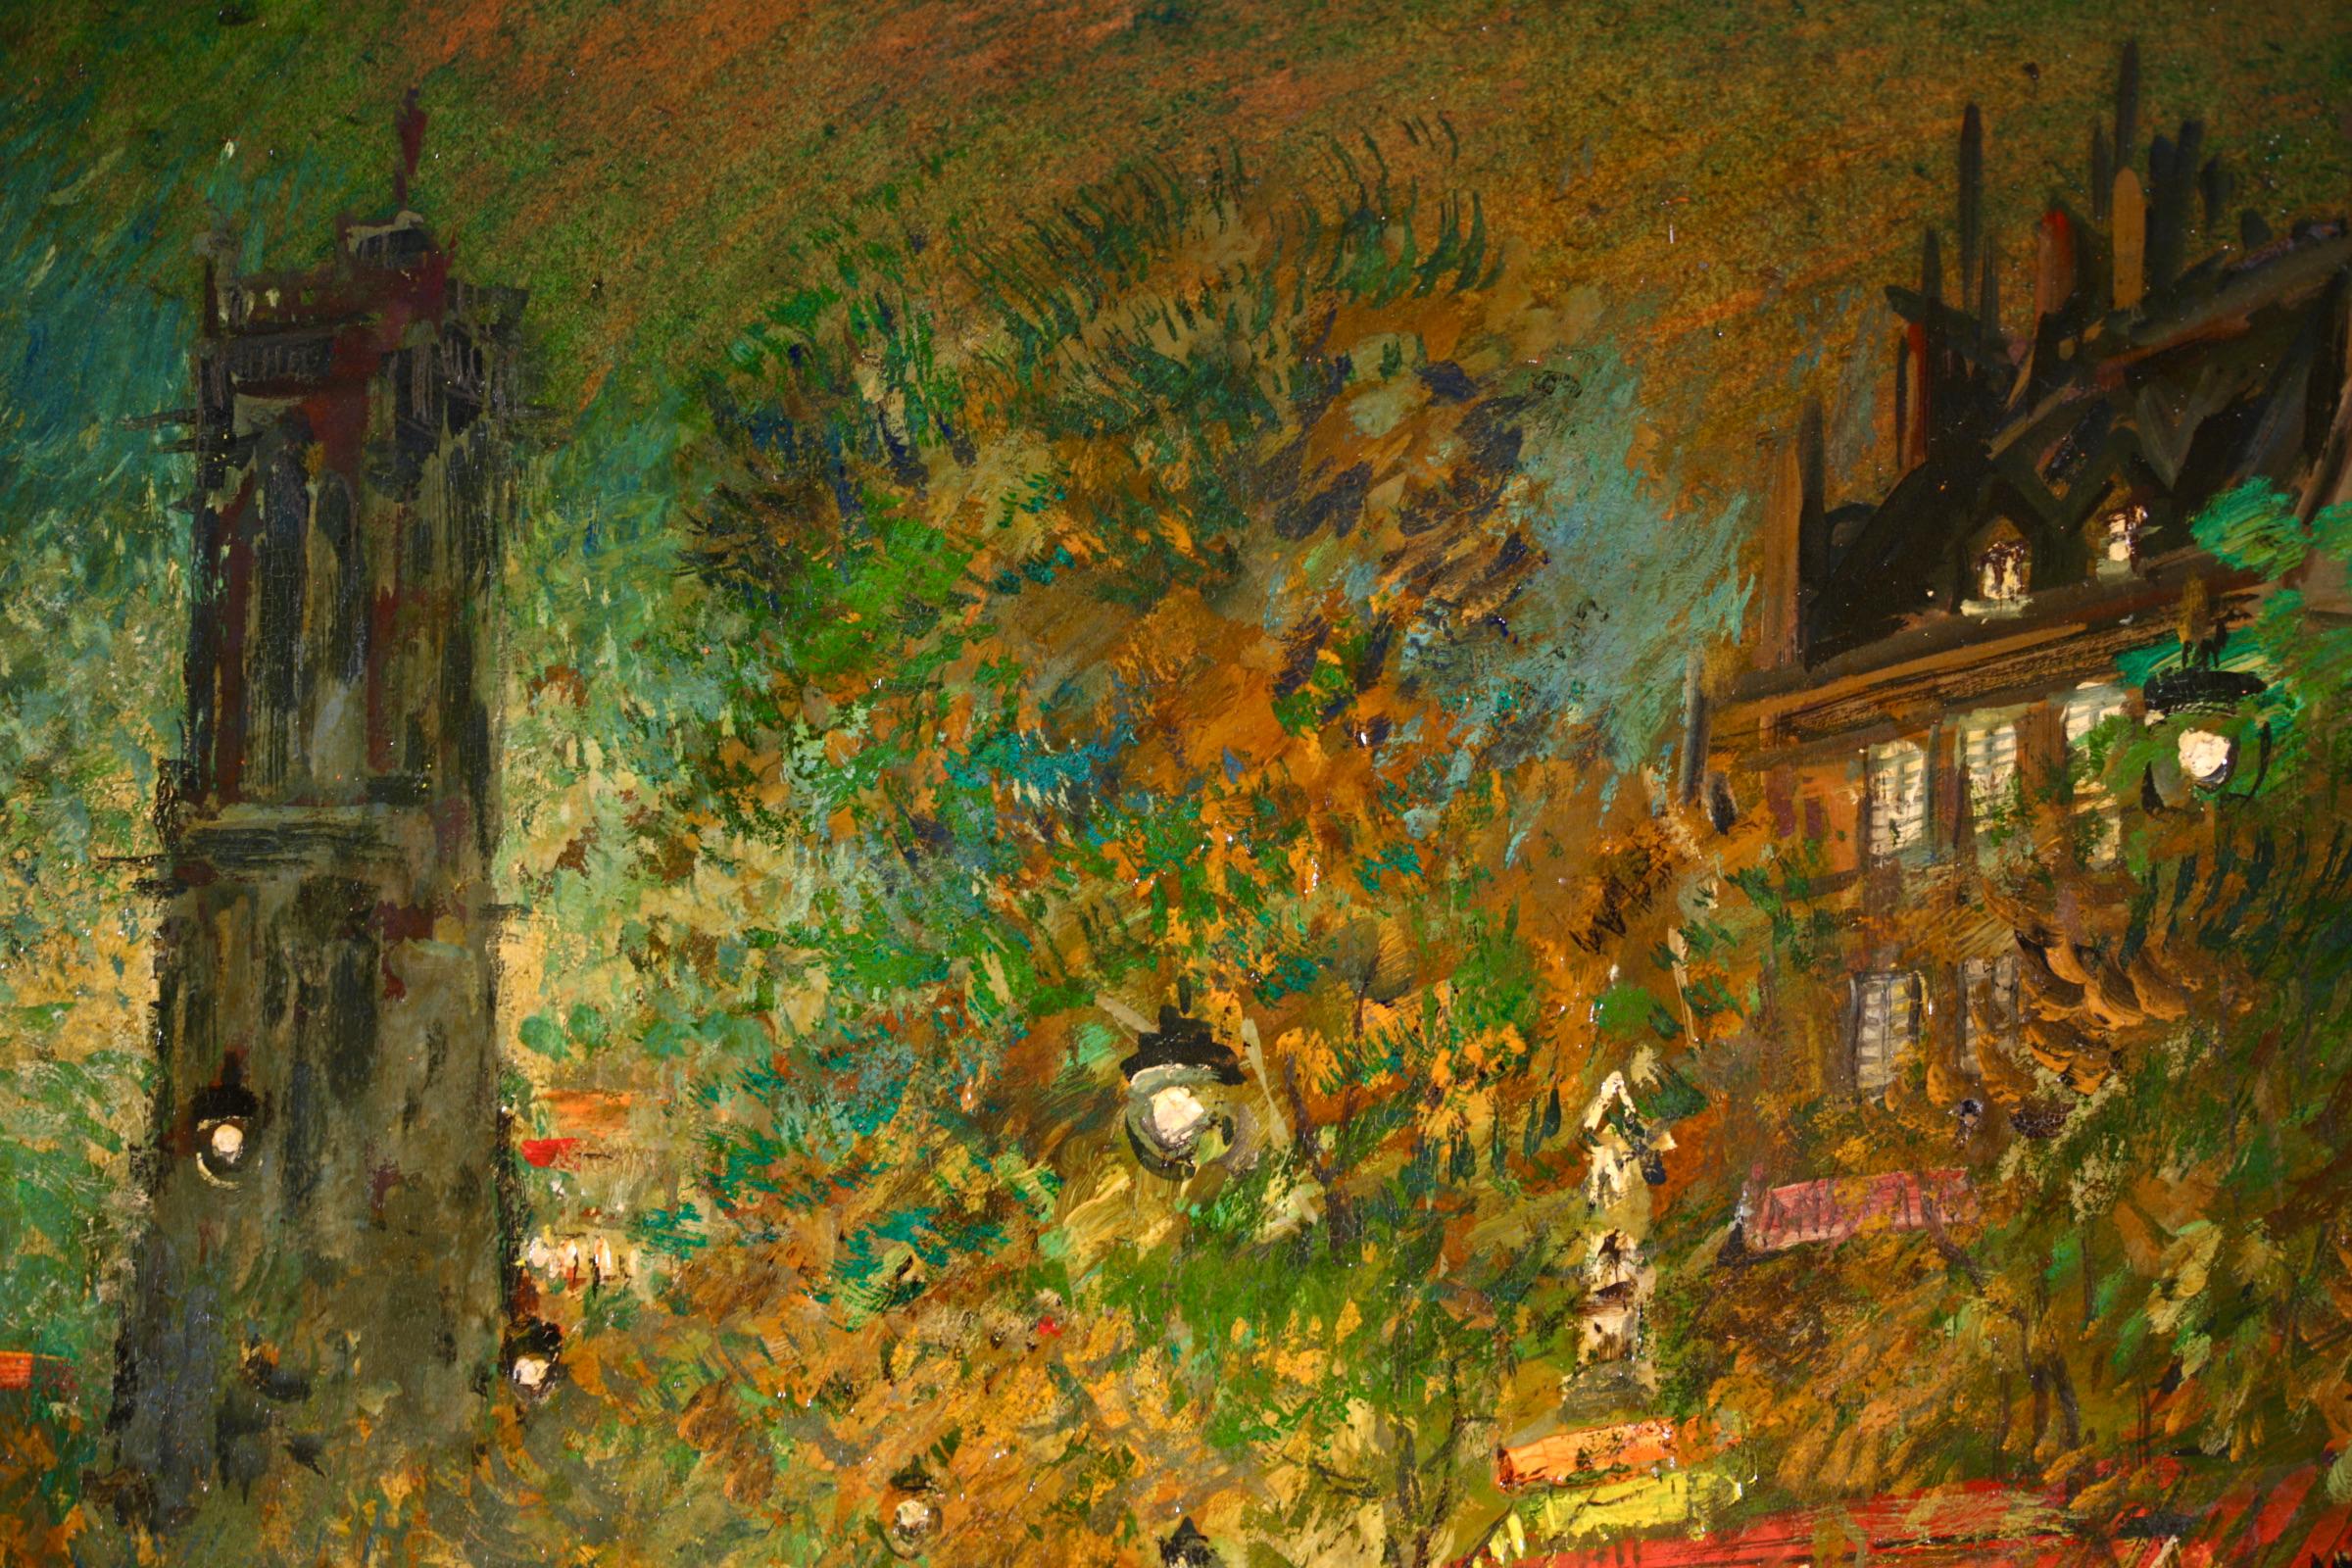 Huile sur panneau signée et titrée par le peintre impressionniste d'origine russe Konstantin Alekseevich Korovin. L'œuvre représente une vue nocturne de la tour Saint-Jacques à Paris, en France. La rue est éclairée par les lampadaires et les